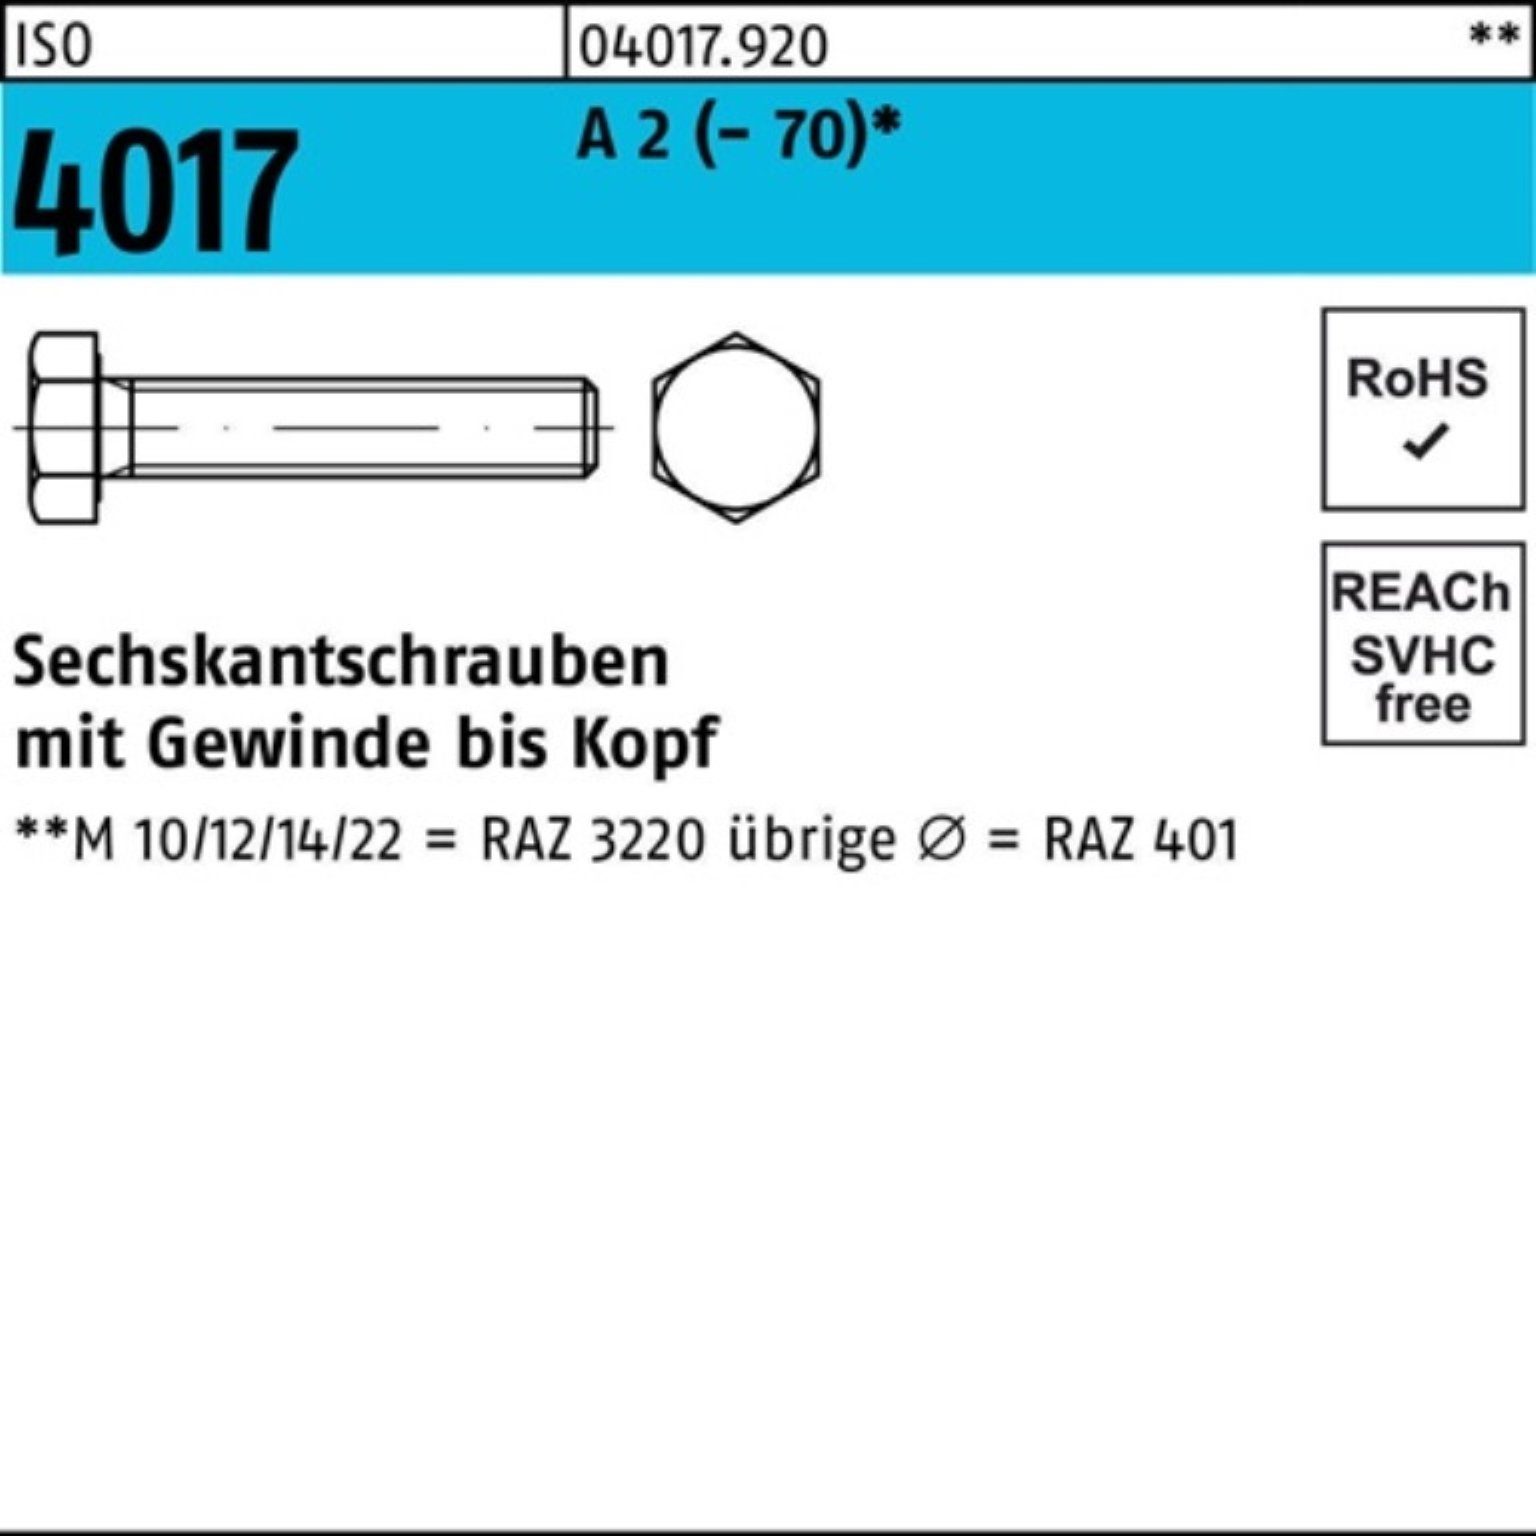 Bufab Sechskantschraube 100er Pack Sechskantschraube ISO 4017 VG M5x 80 A 2 (70) 100 Stück